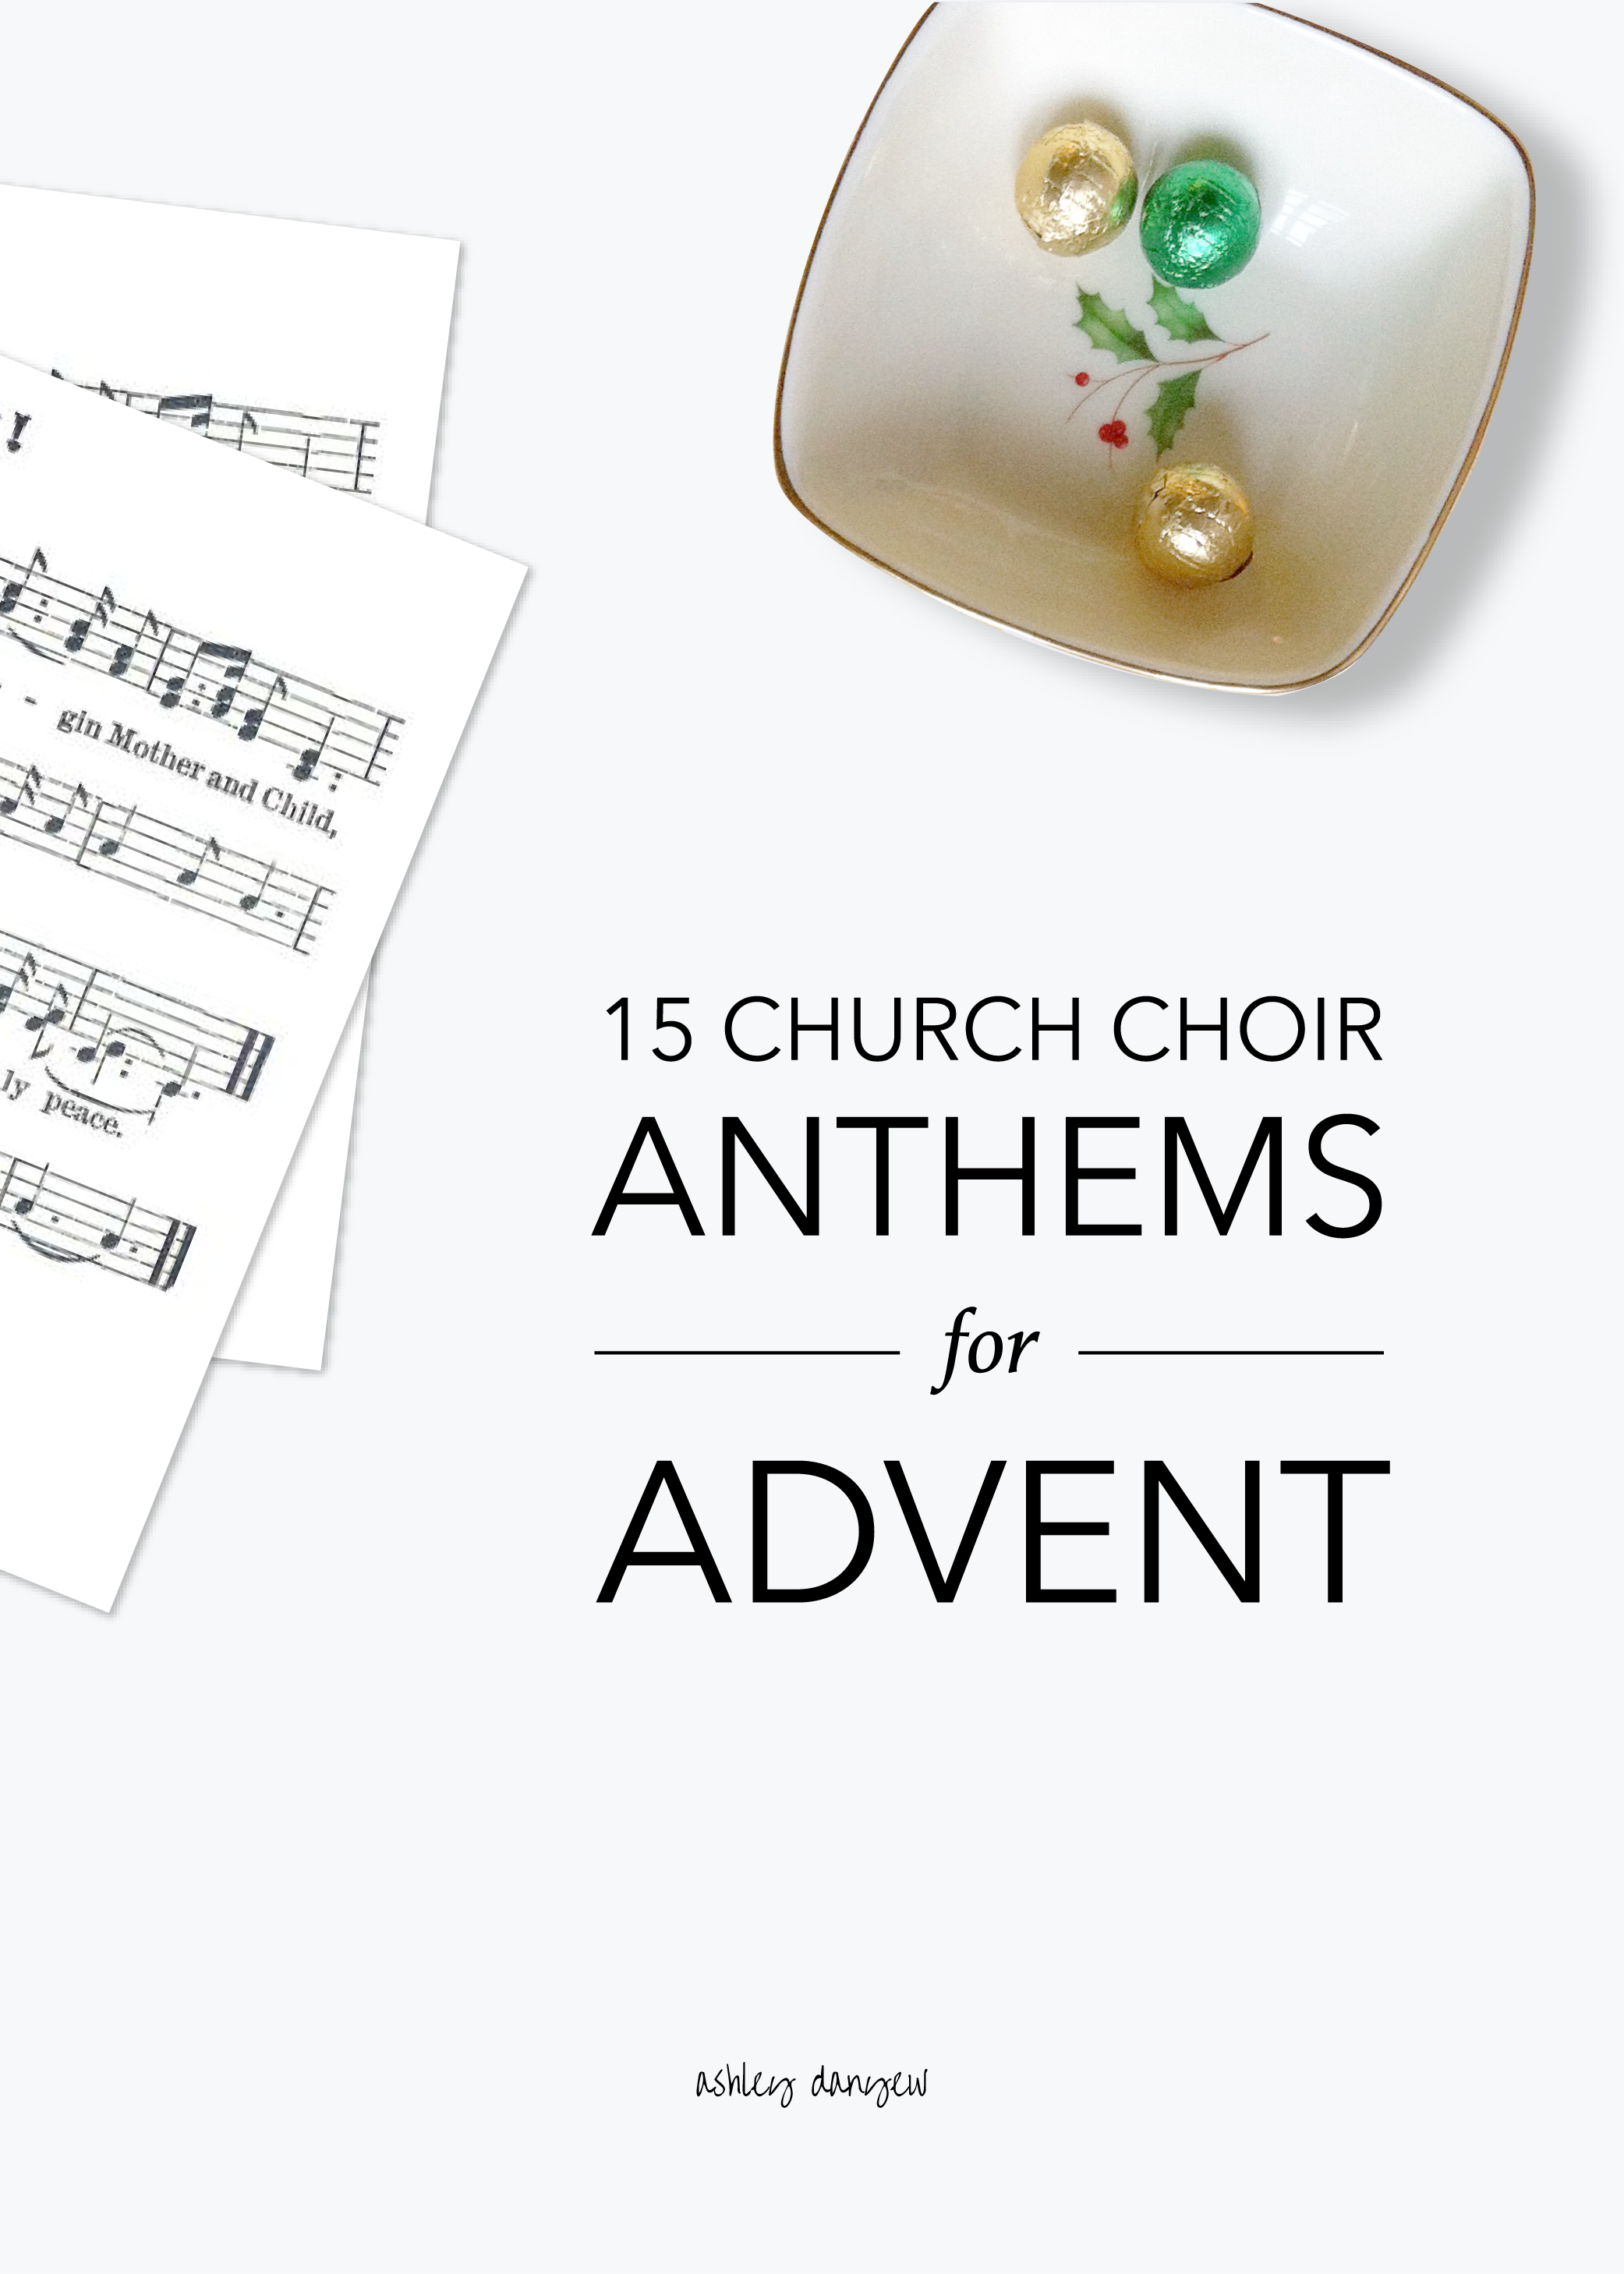 Fifteen Church Choir Anthems for Advent-01.png